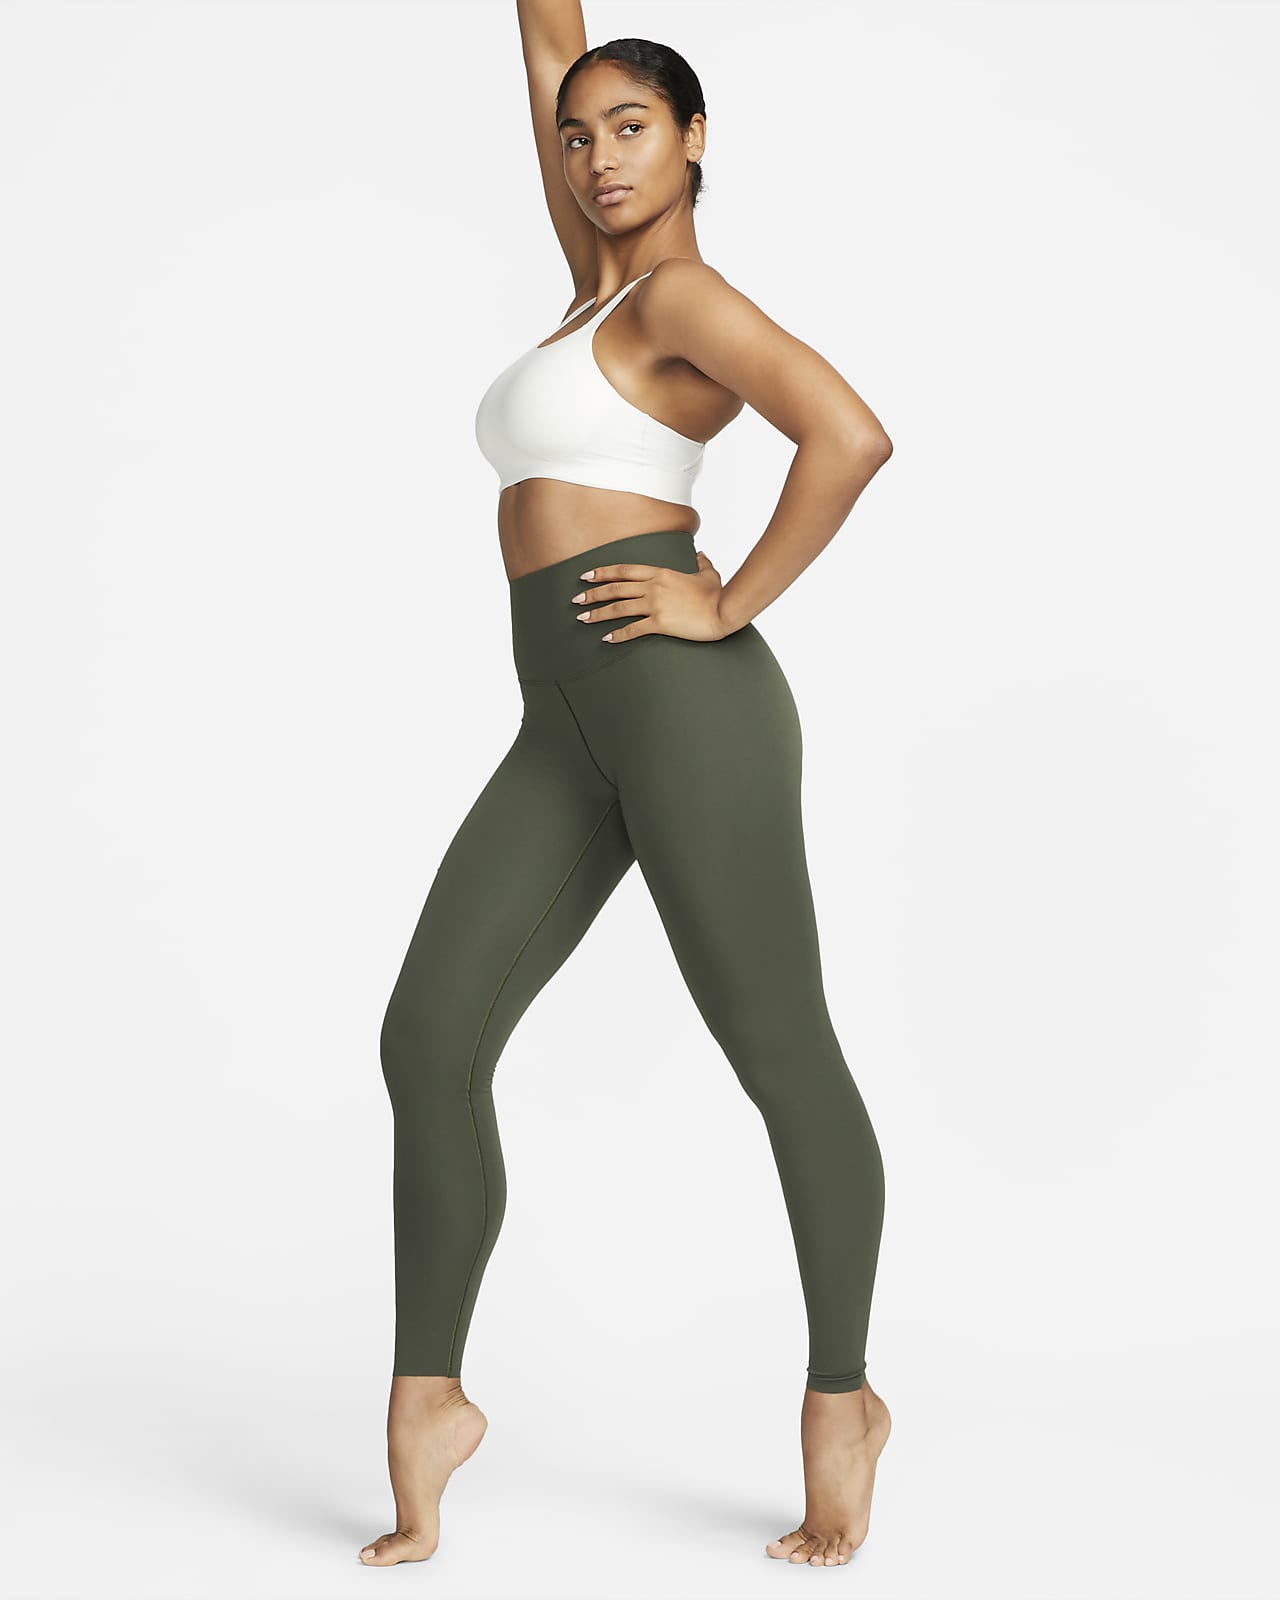 Γυναικείο ψηλόμεσο κολάν με ήπια στήριξη και κανονικό μήκος Nike Zenvy